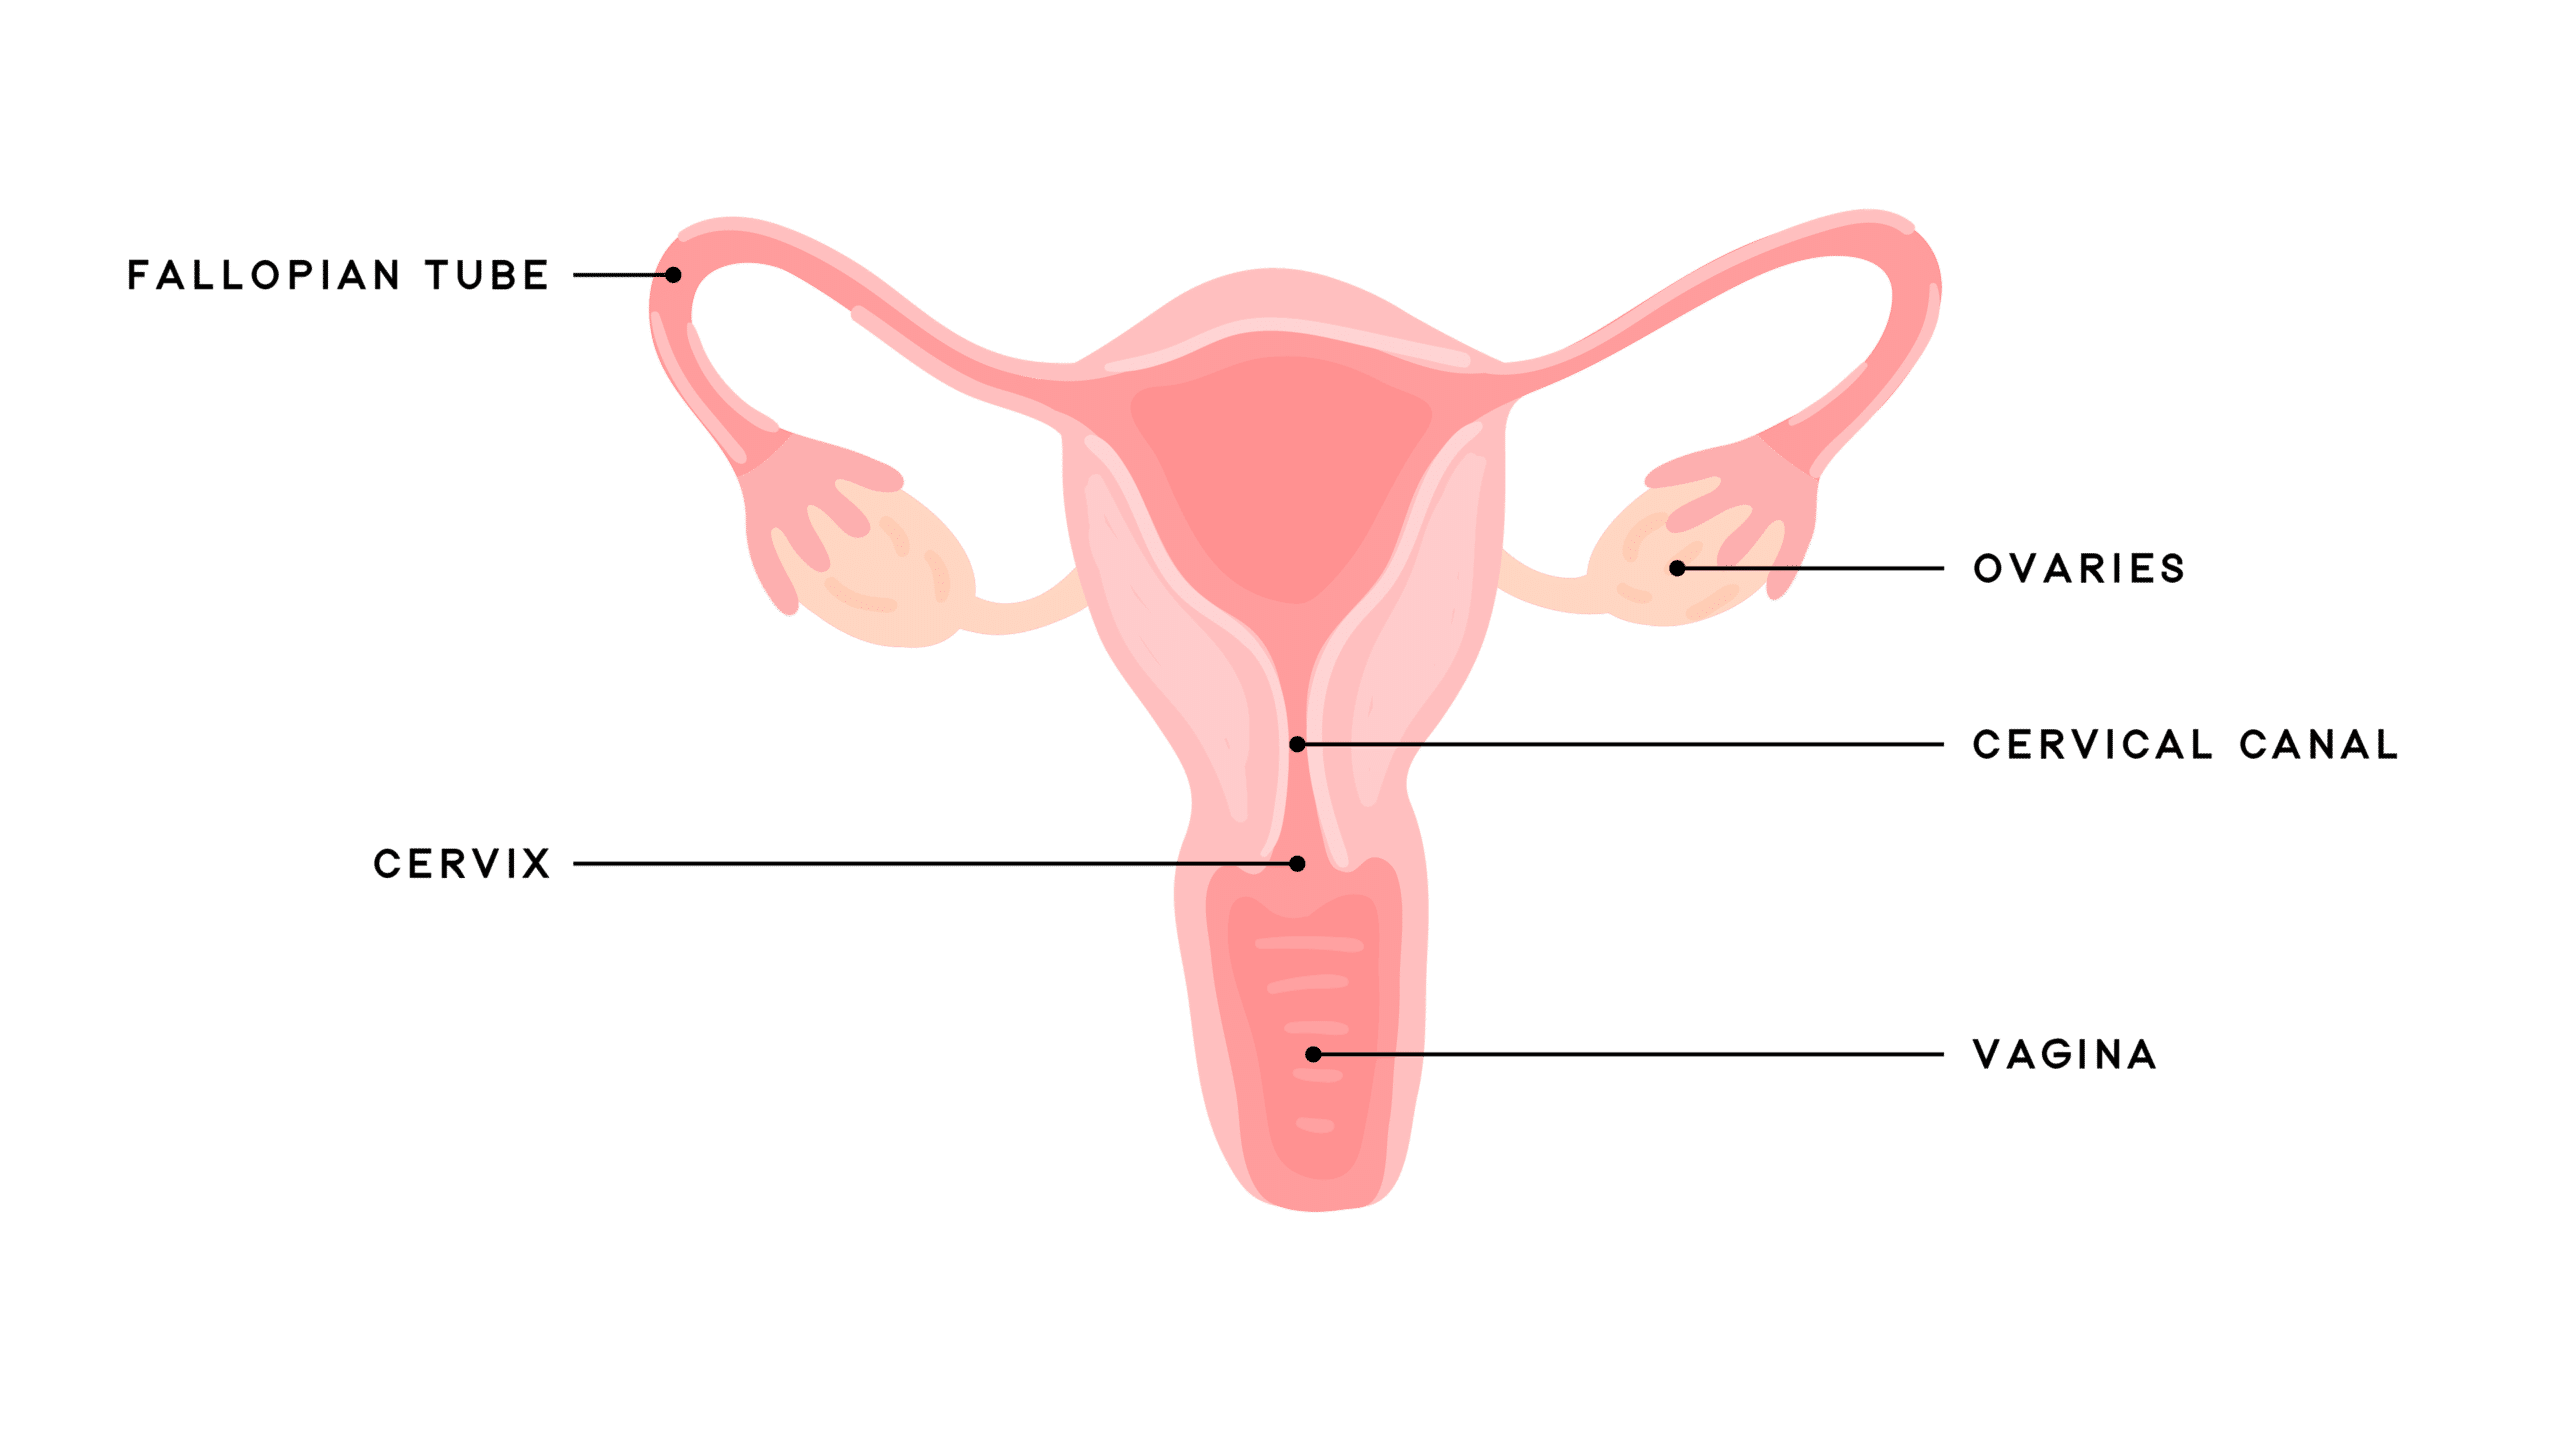 FERTI·LILY Conception Cup vs Menstrual Cups